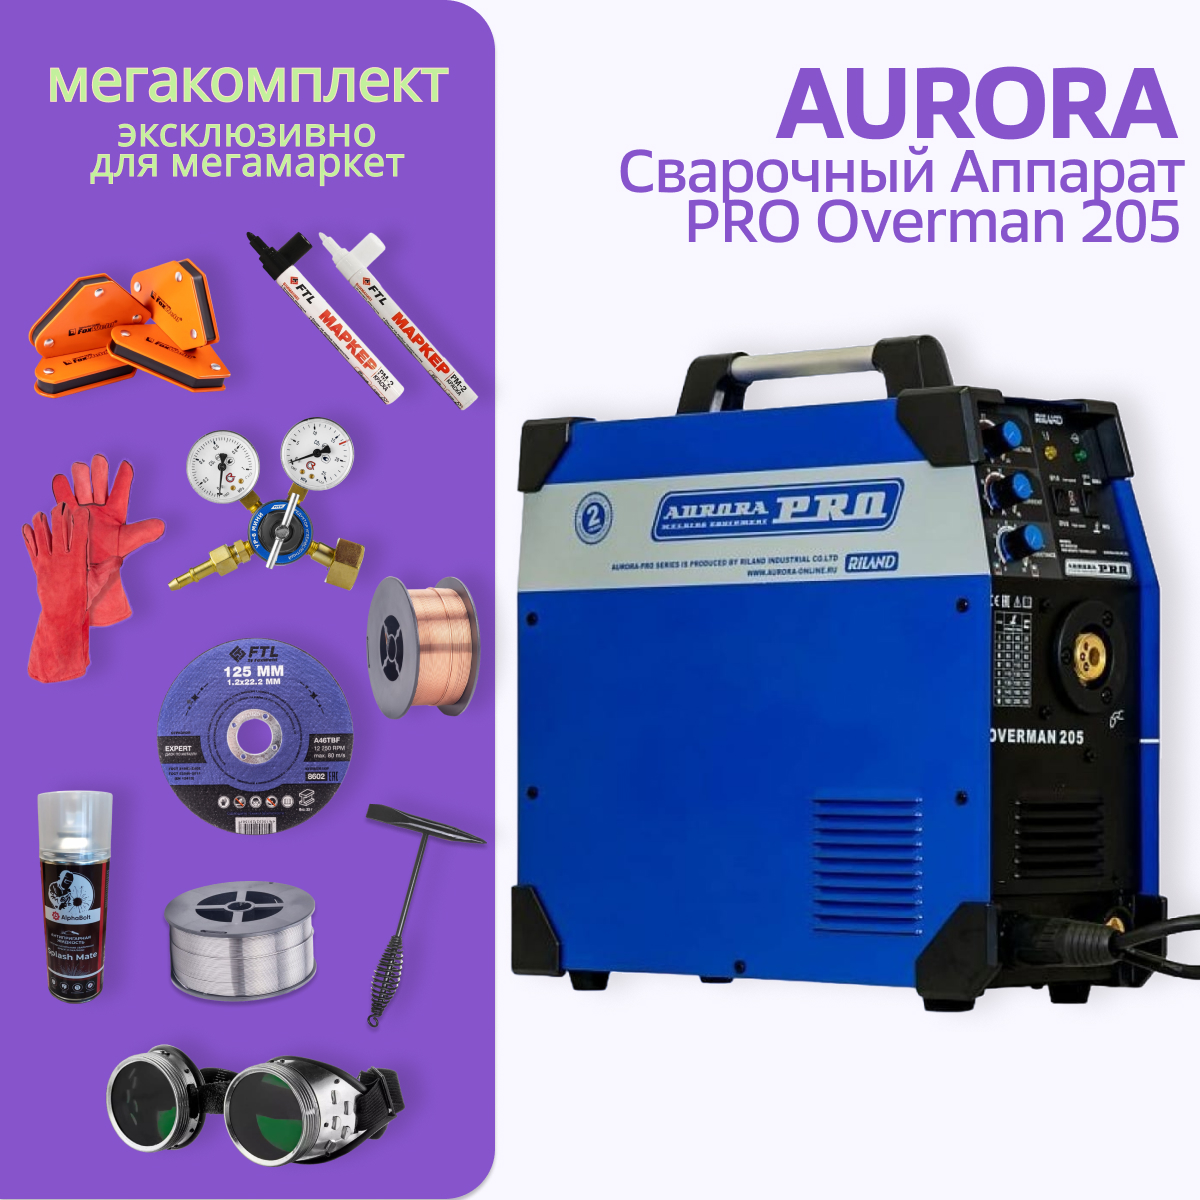 Сварочный полуавтомат Aurora PRO OVERMAN 205 + МЕГА комплект сварочный полуавтомат aurora pro overman 205 маска редуктор